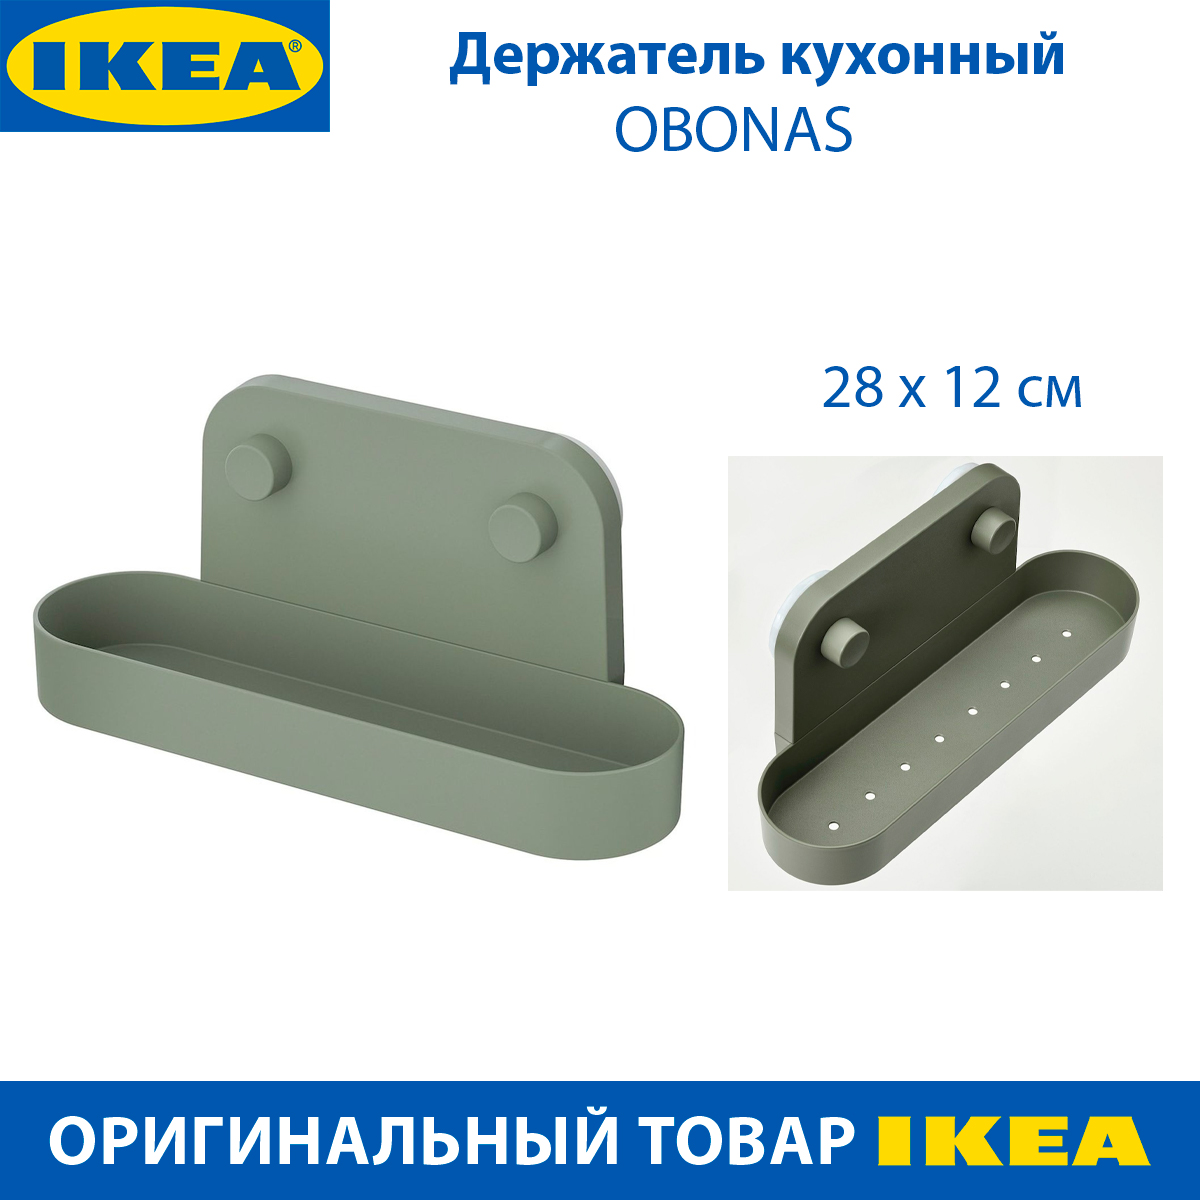 Держатель кухонный IKEA OBONAS серо-зеленый на присоске 28 см 1 шт